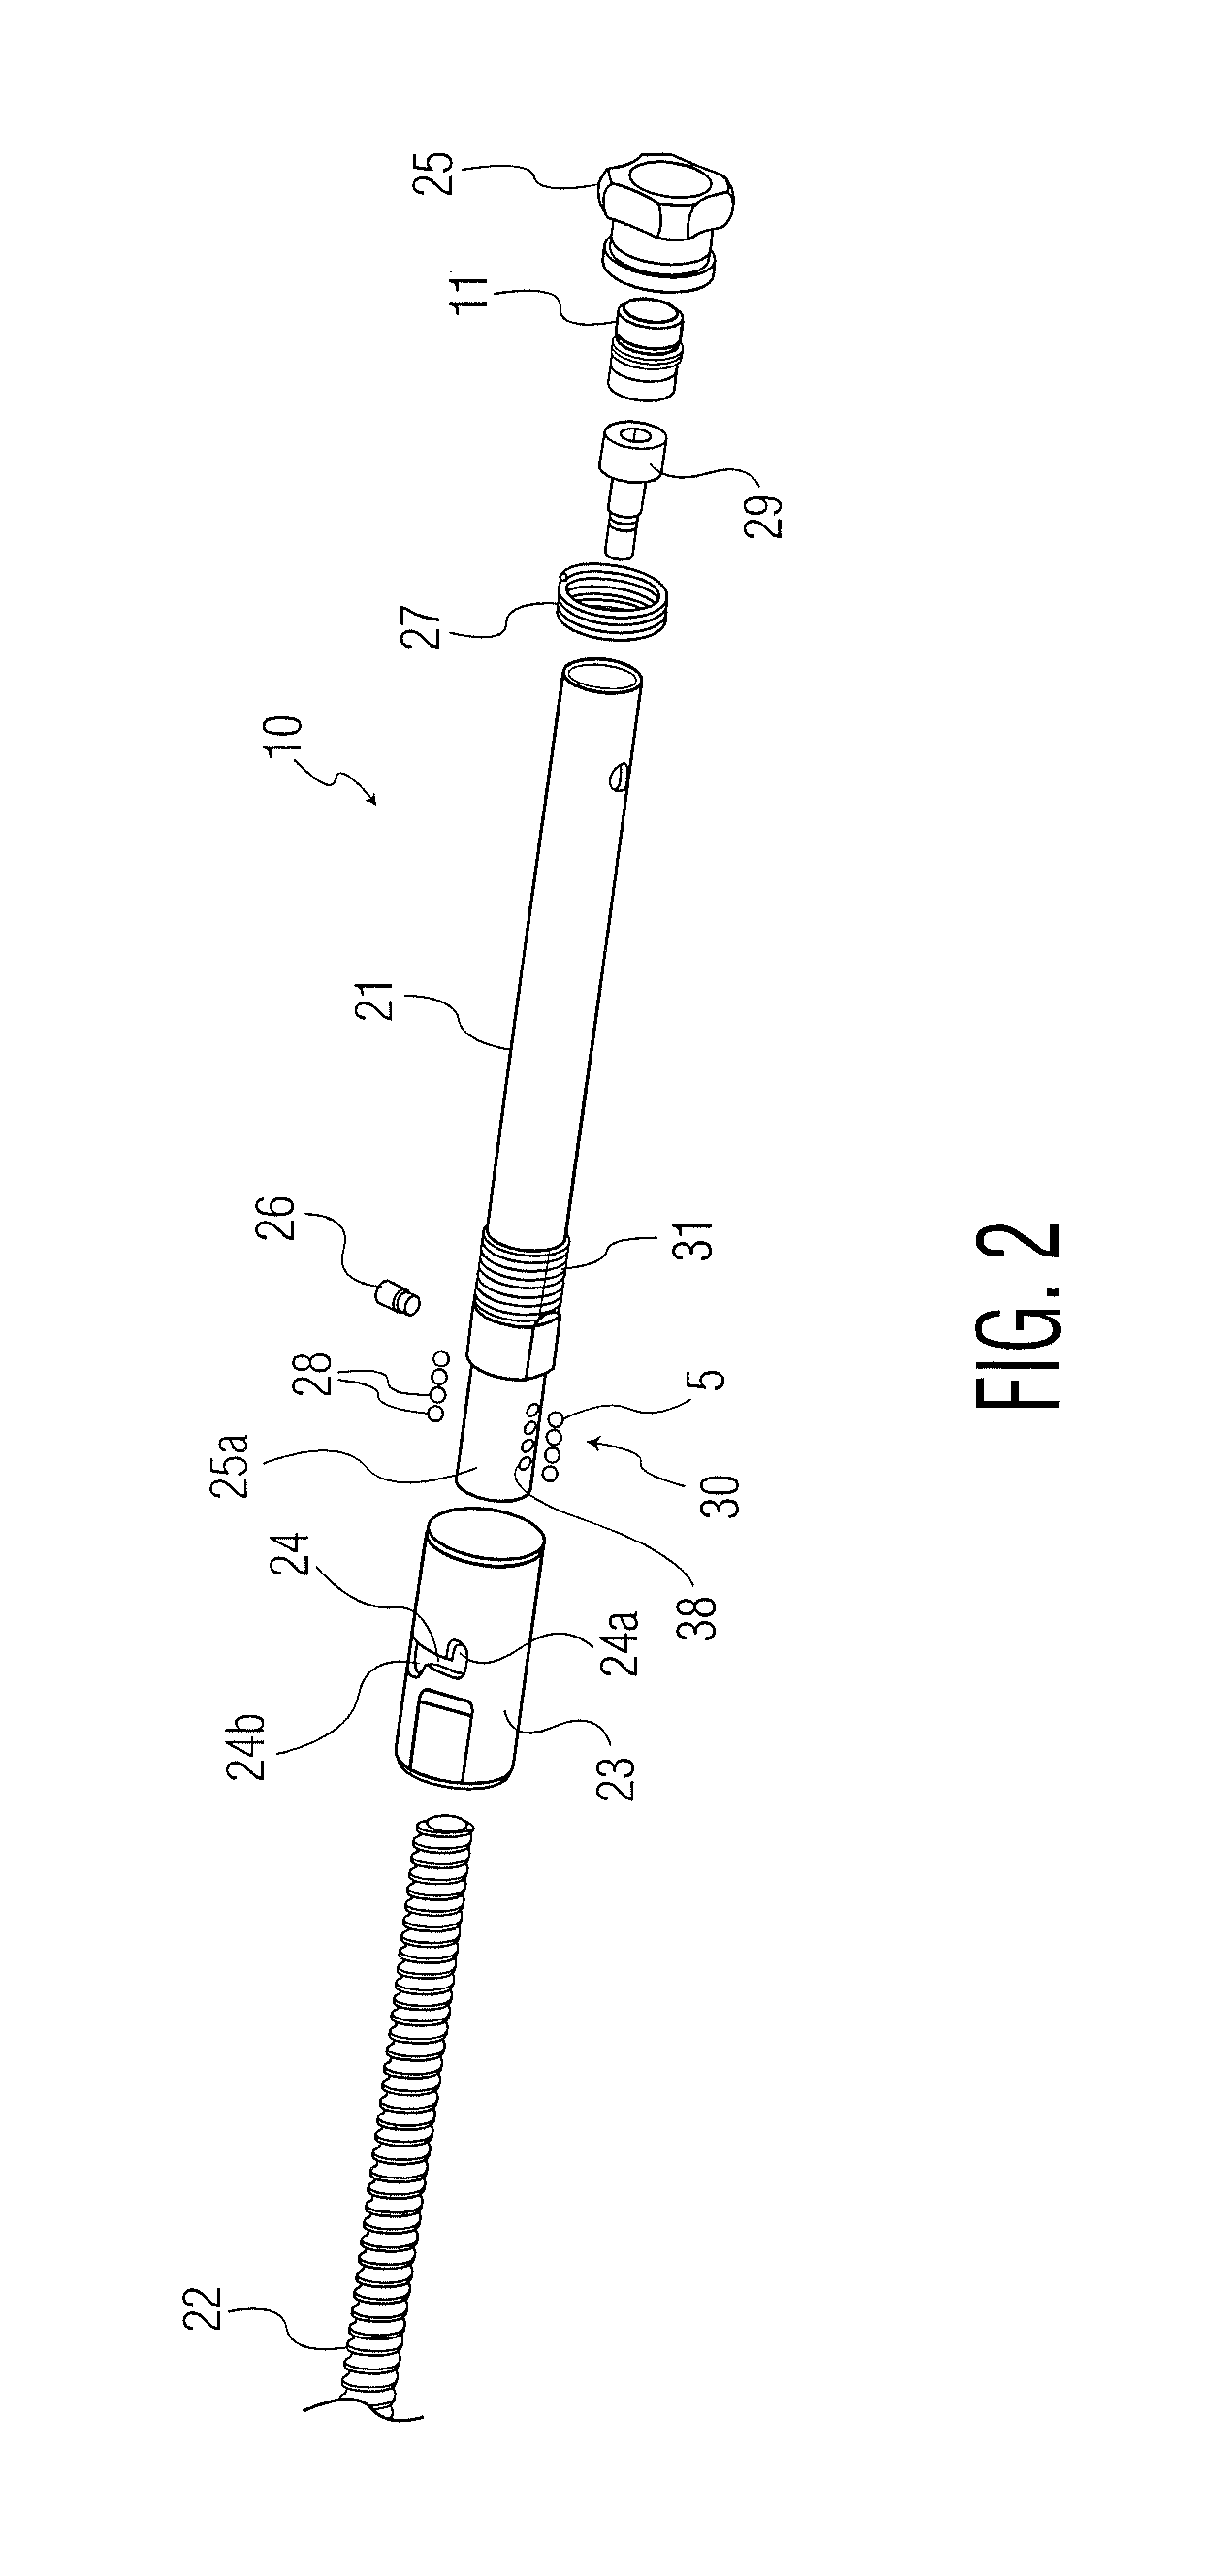 Telescopic strut for an external fixator